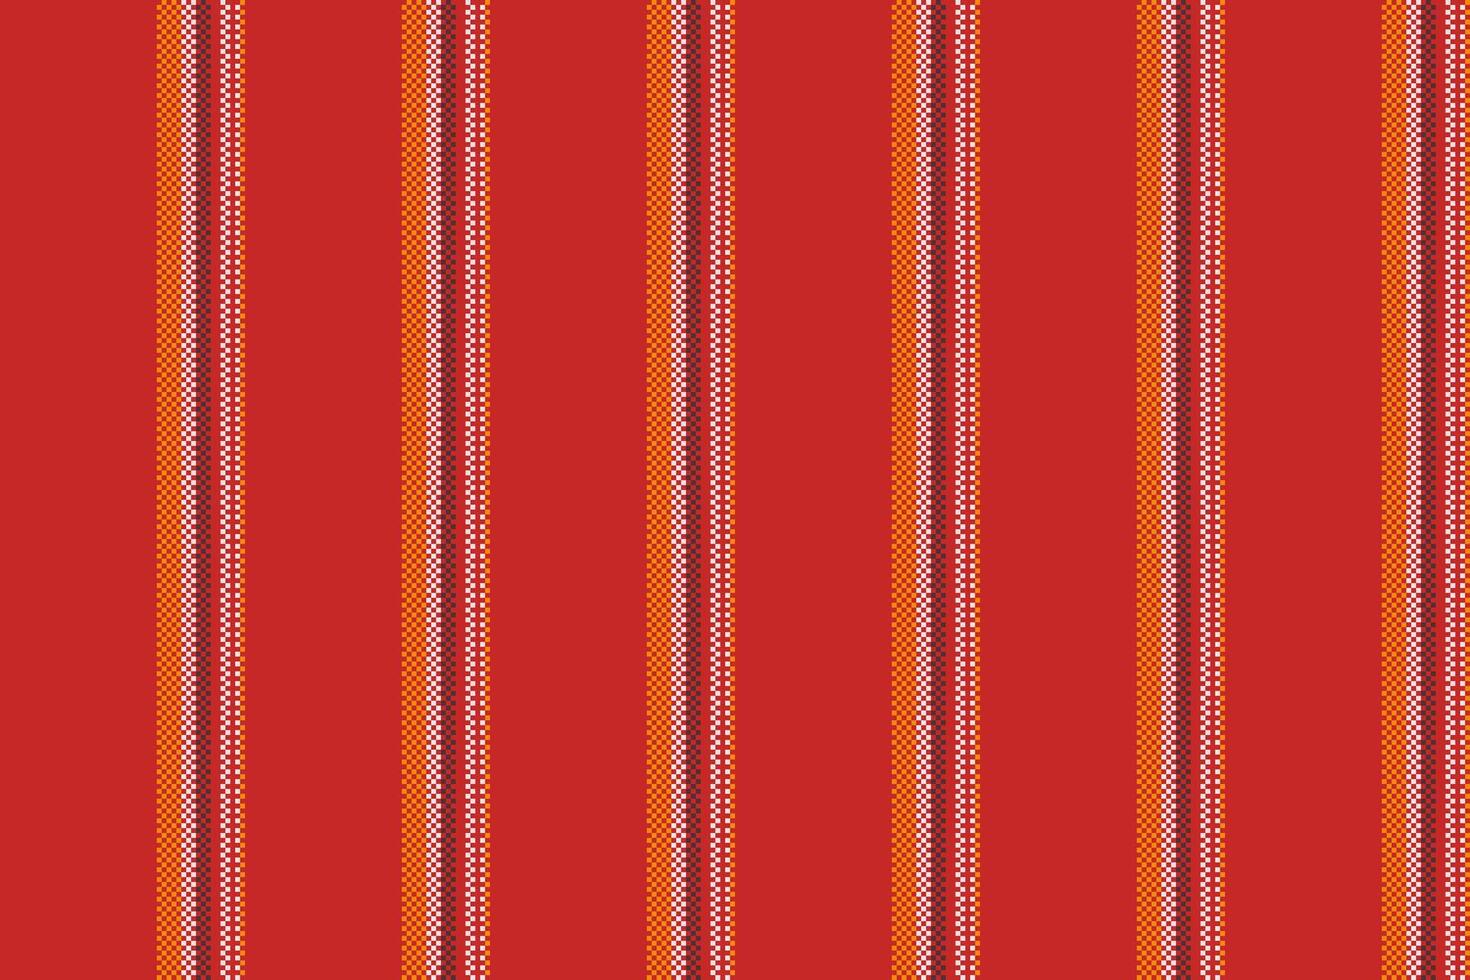 produktion rader bakgrund rand, franska vektor textur tyg. årgång vertikal sömlös textil- mönster i röd och vit färger.